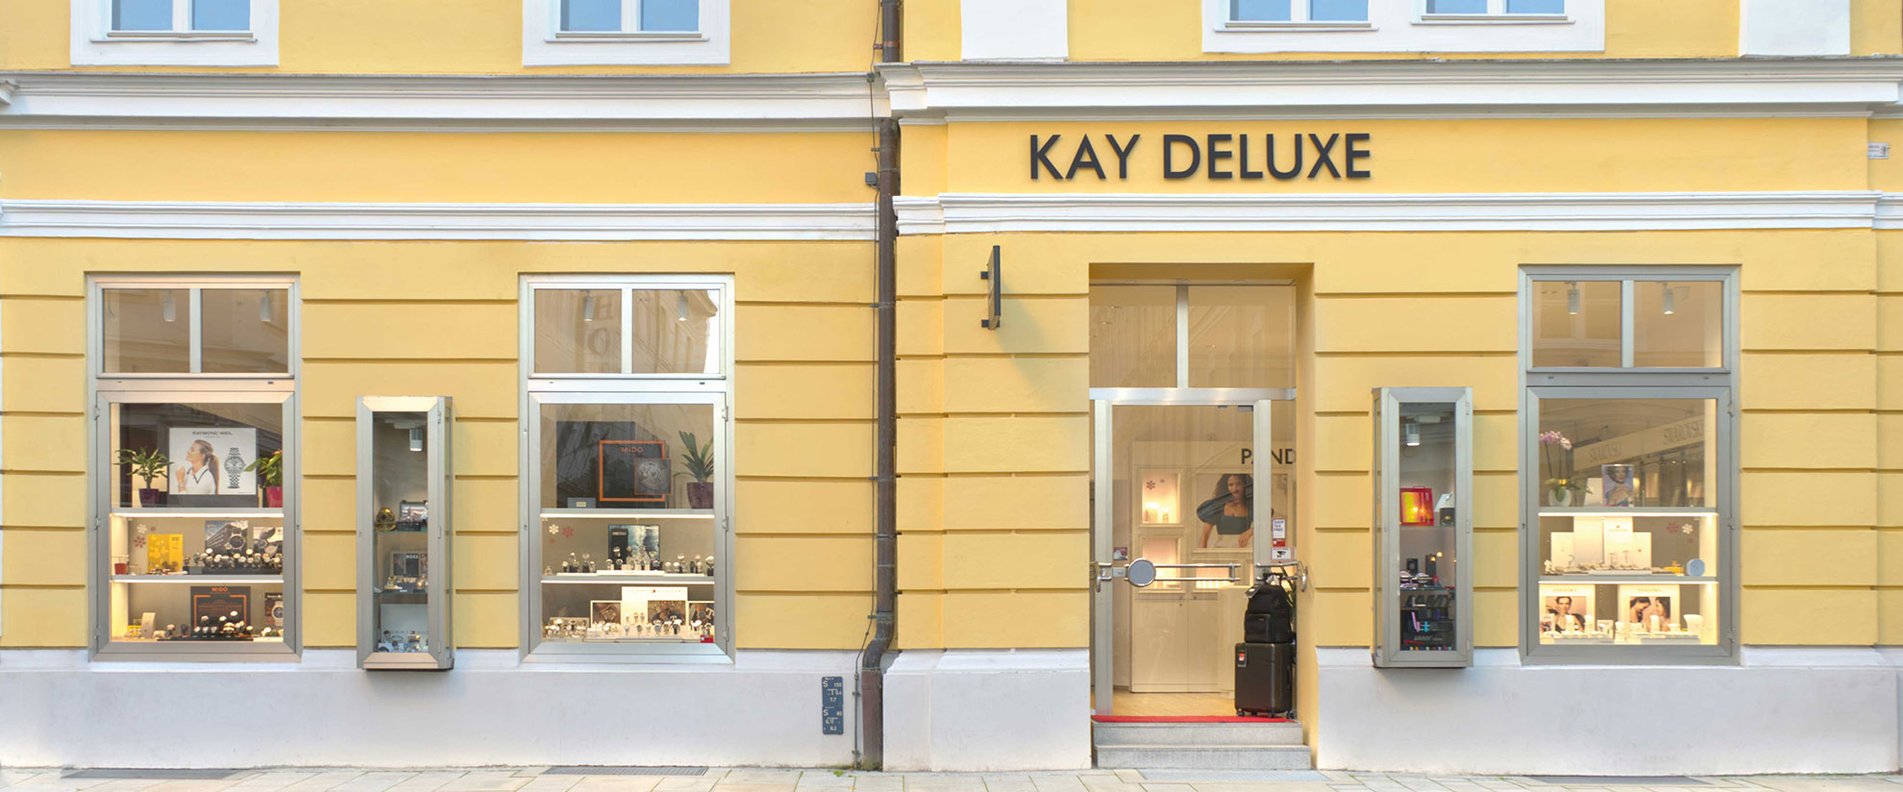 Kay Deluxe | © KayDeluxe